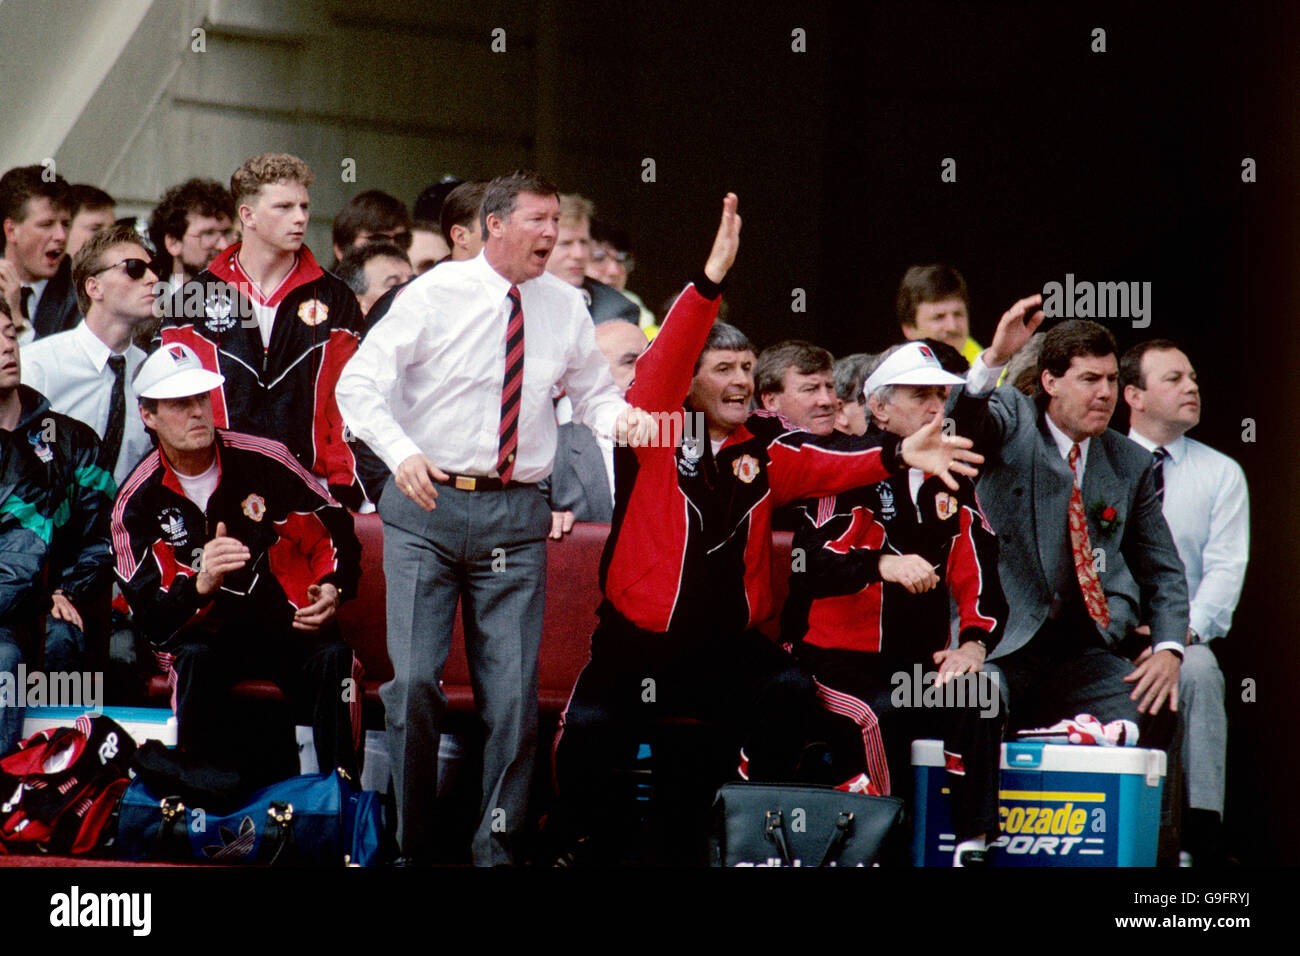 Football - finale de la coupe FA 1990 - Manchester United contre Crystal Palace.Alex Ferguson (l), directeur de Manchester United, et son assistant Archie KNOX sautent à leurs pieds Banque D'Images